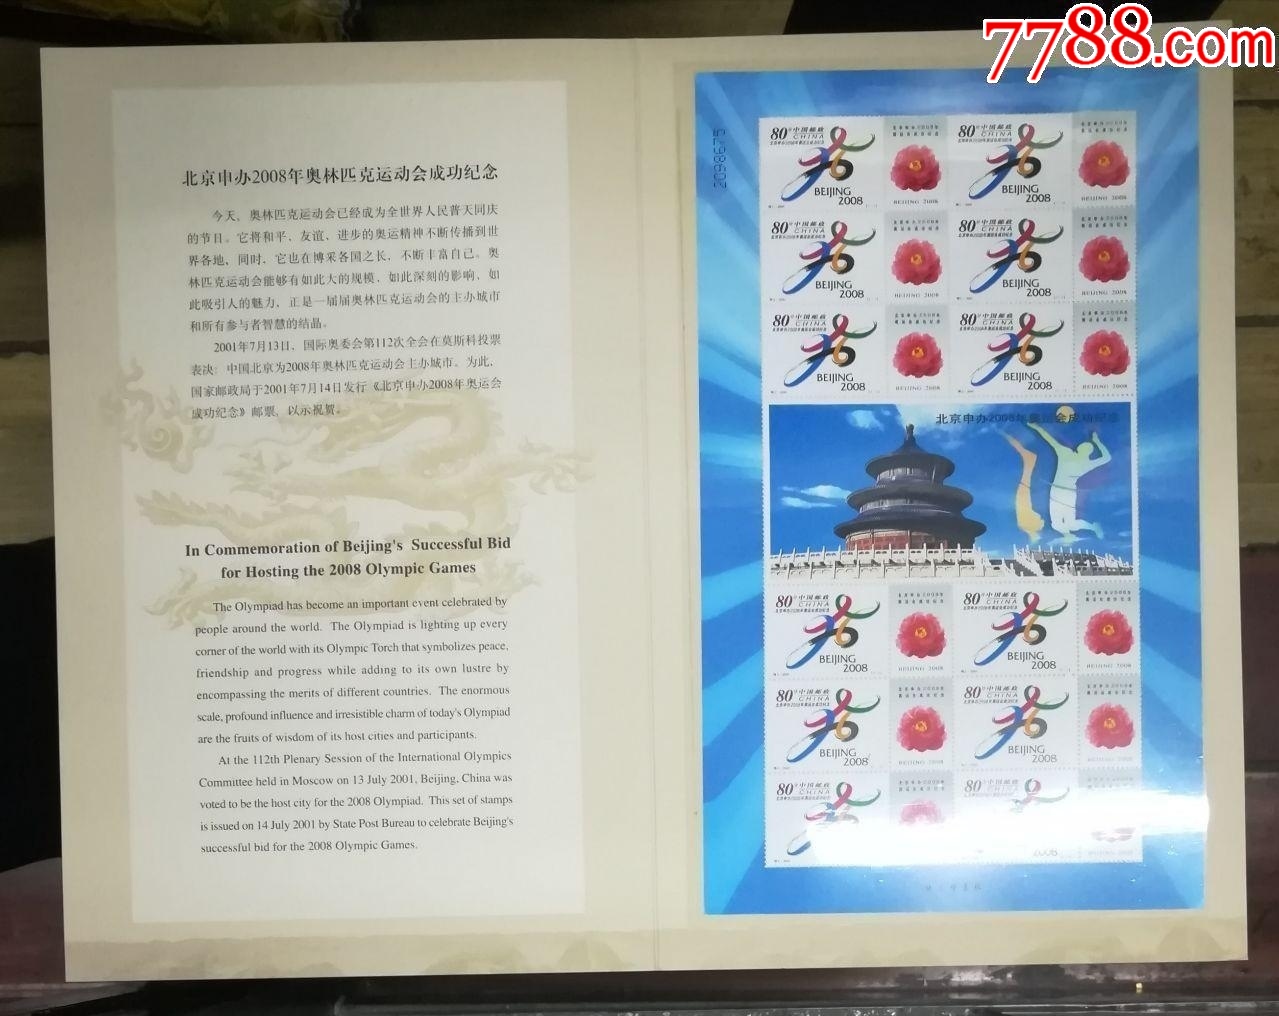 北京申奥成功纪念日节日宣传插画手机海报_图片模板素材-稿定设计